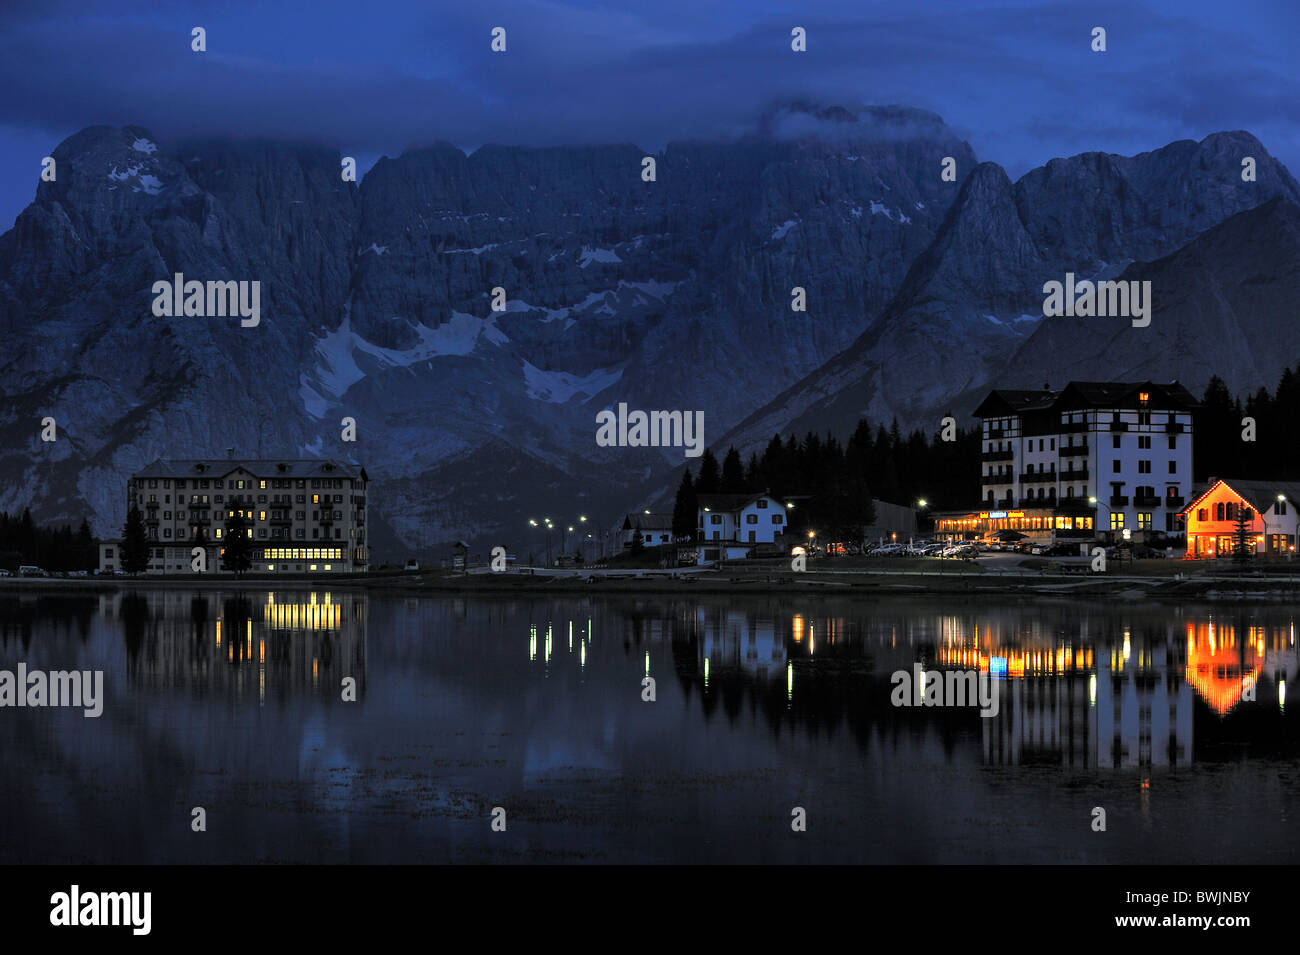 The mountain range Gruppo del Sorapis and hotels at night along lake Lago di Misurina in Auronzo di Cadore, Dolomites, Italy Stock Photo